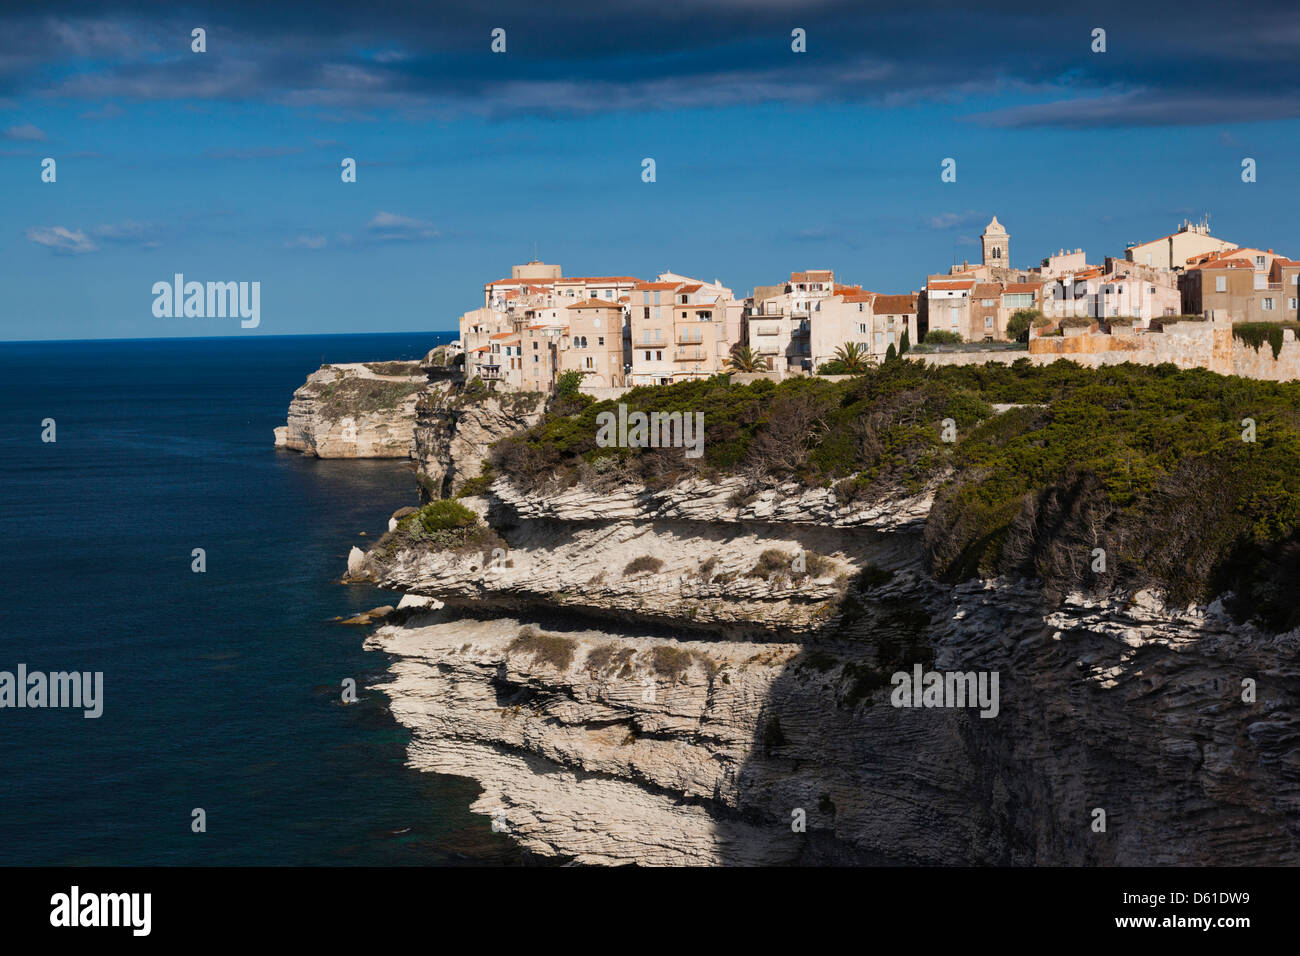 Frankreich, Korsika, Bonifacio, Schaltung des Falaises, Klippenweg, erhöhten Blick auf Stadt und Felsen Stockfoto